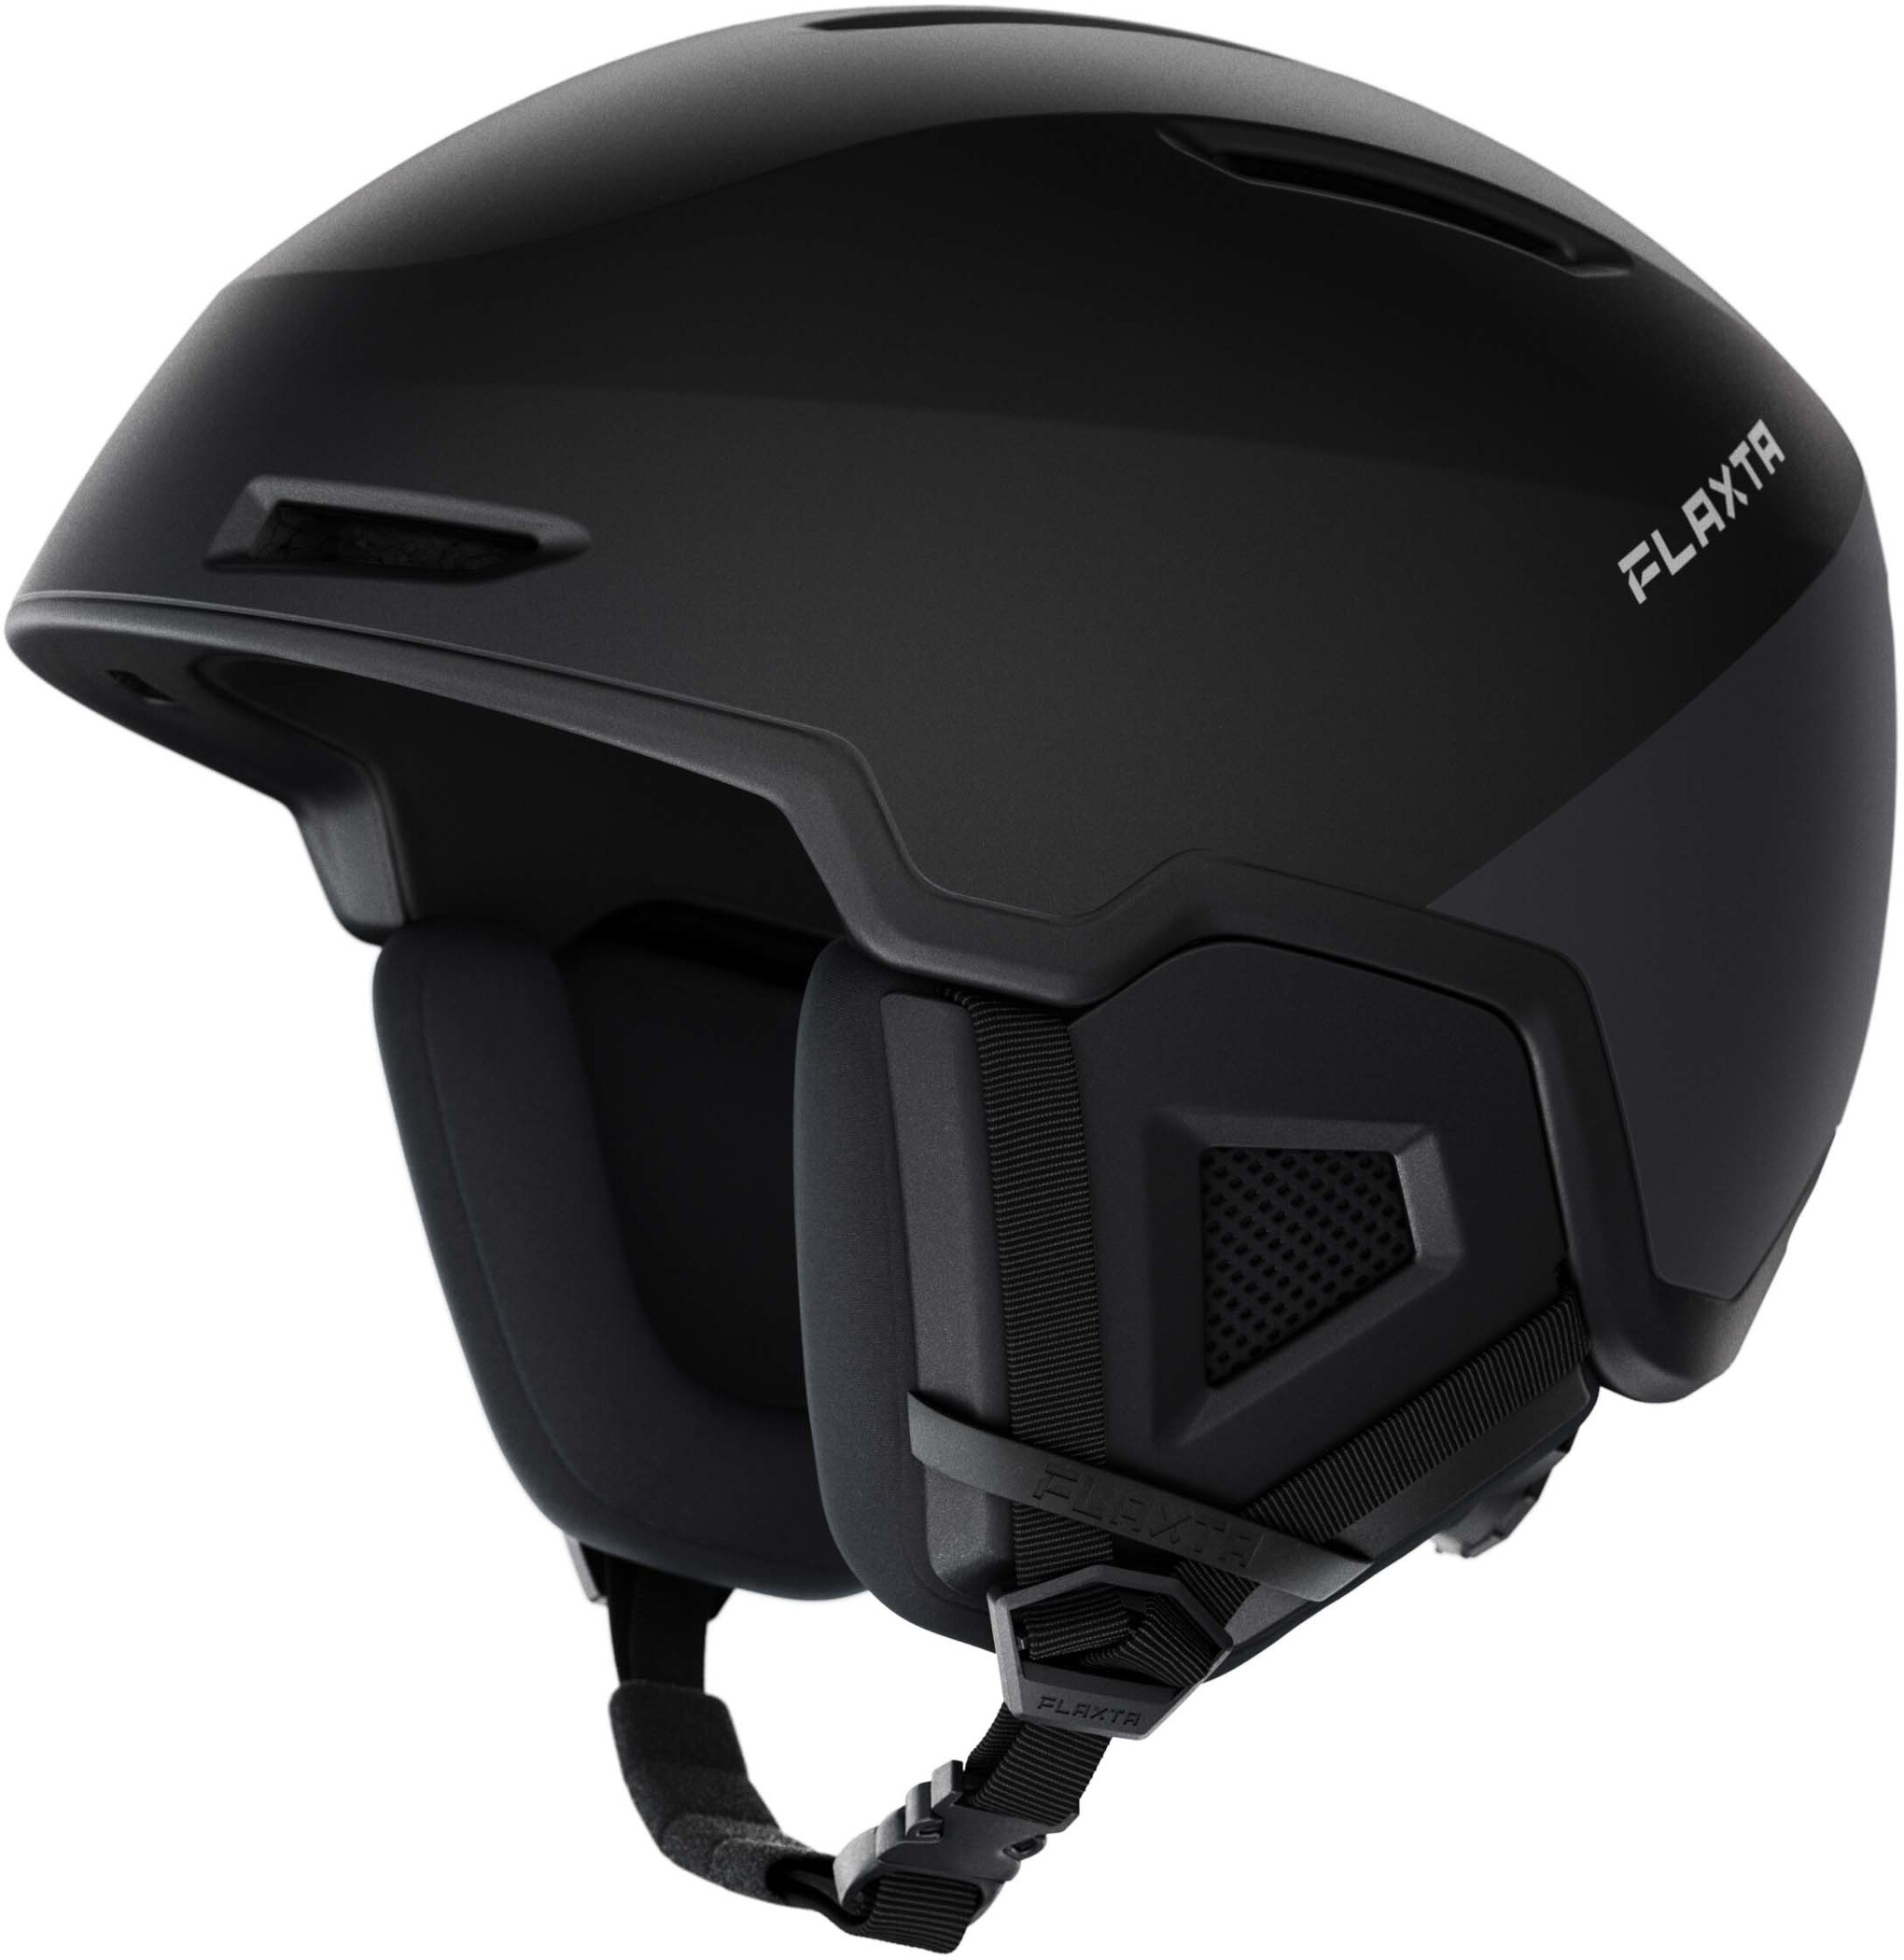 Flaxta Exalted Helm schwarz/weiß